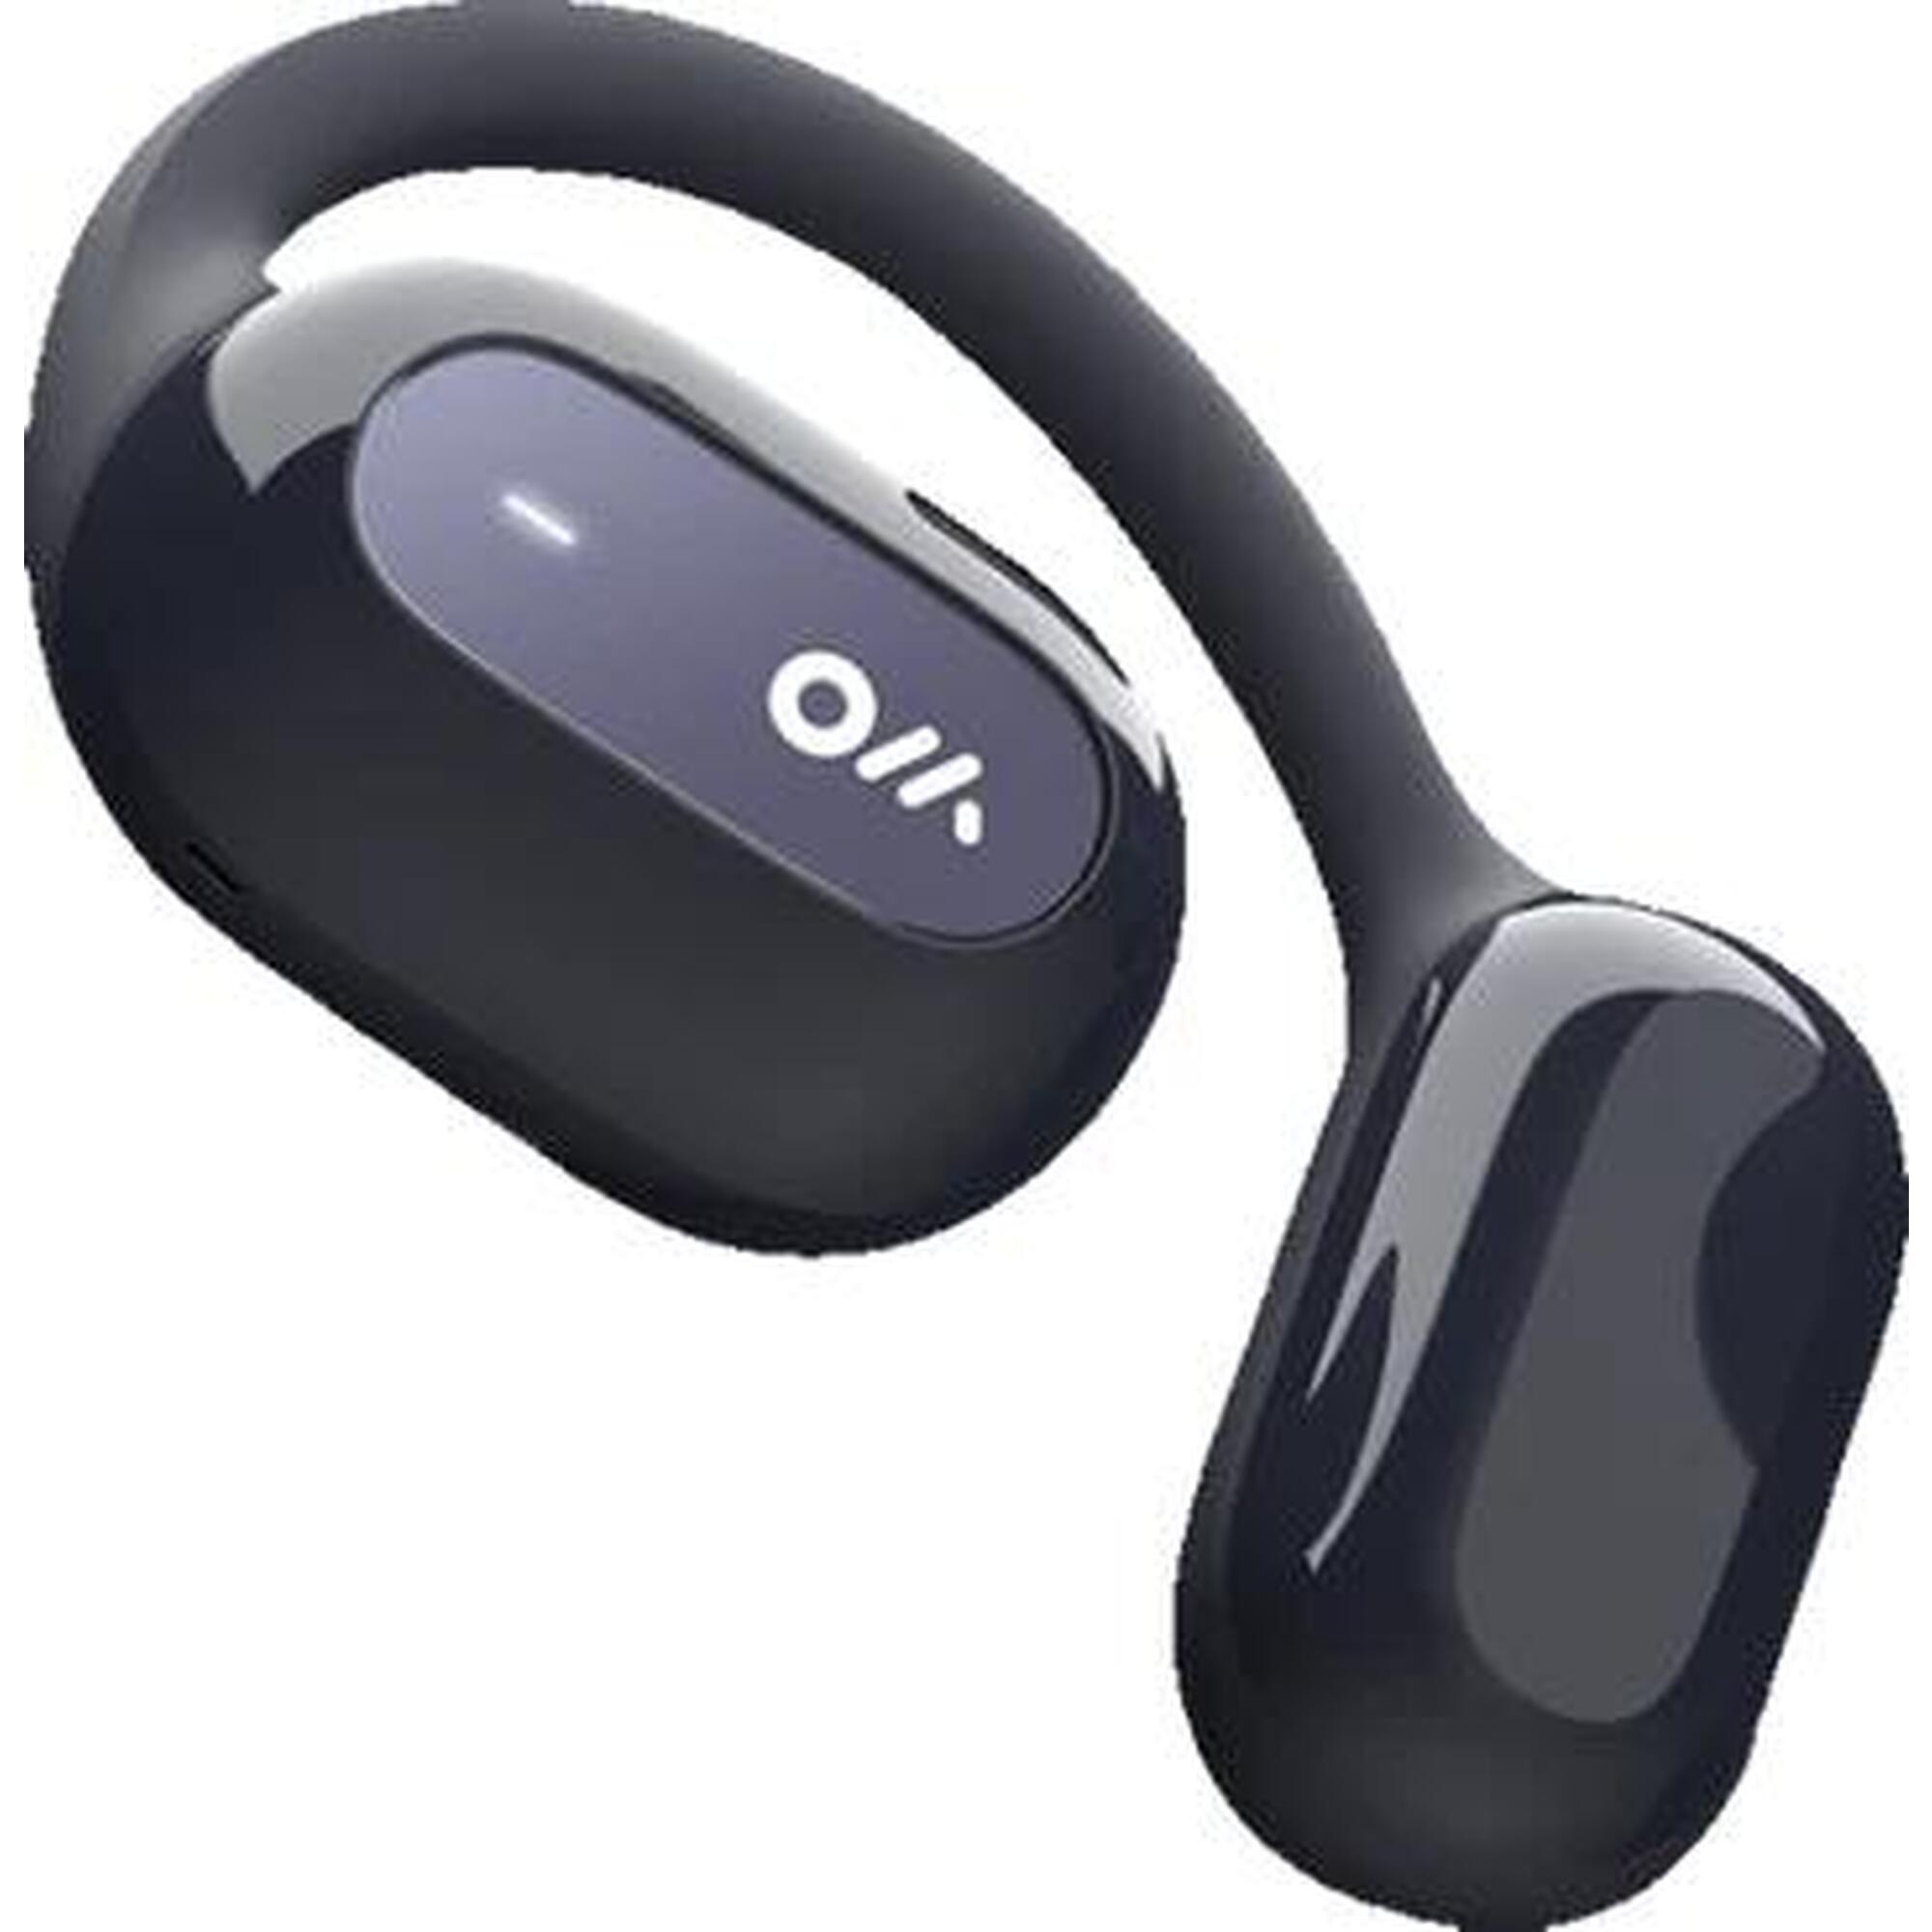 OWS2 開放式可穿戴立體聲藍芽耳機 - 星際藍